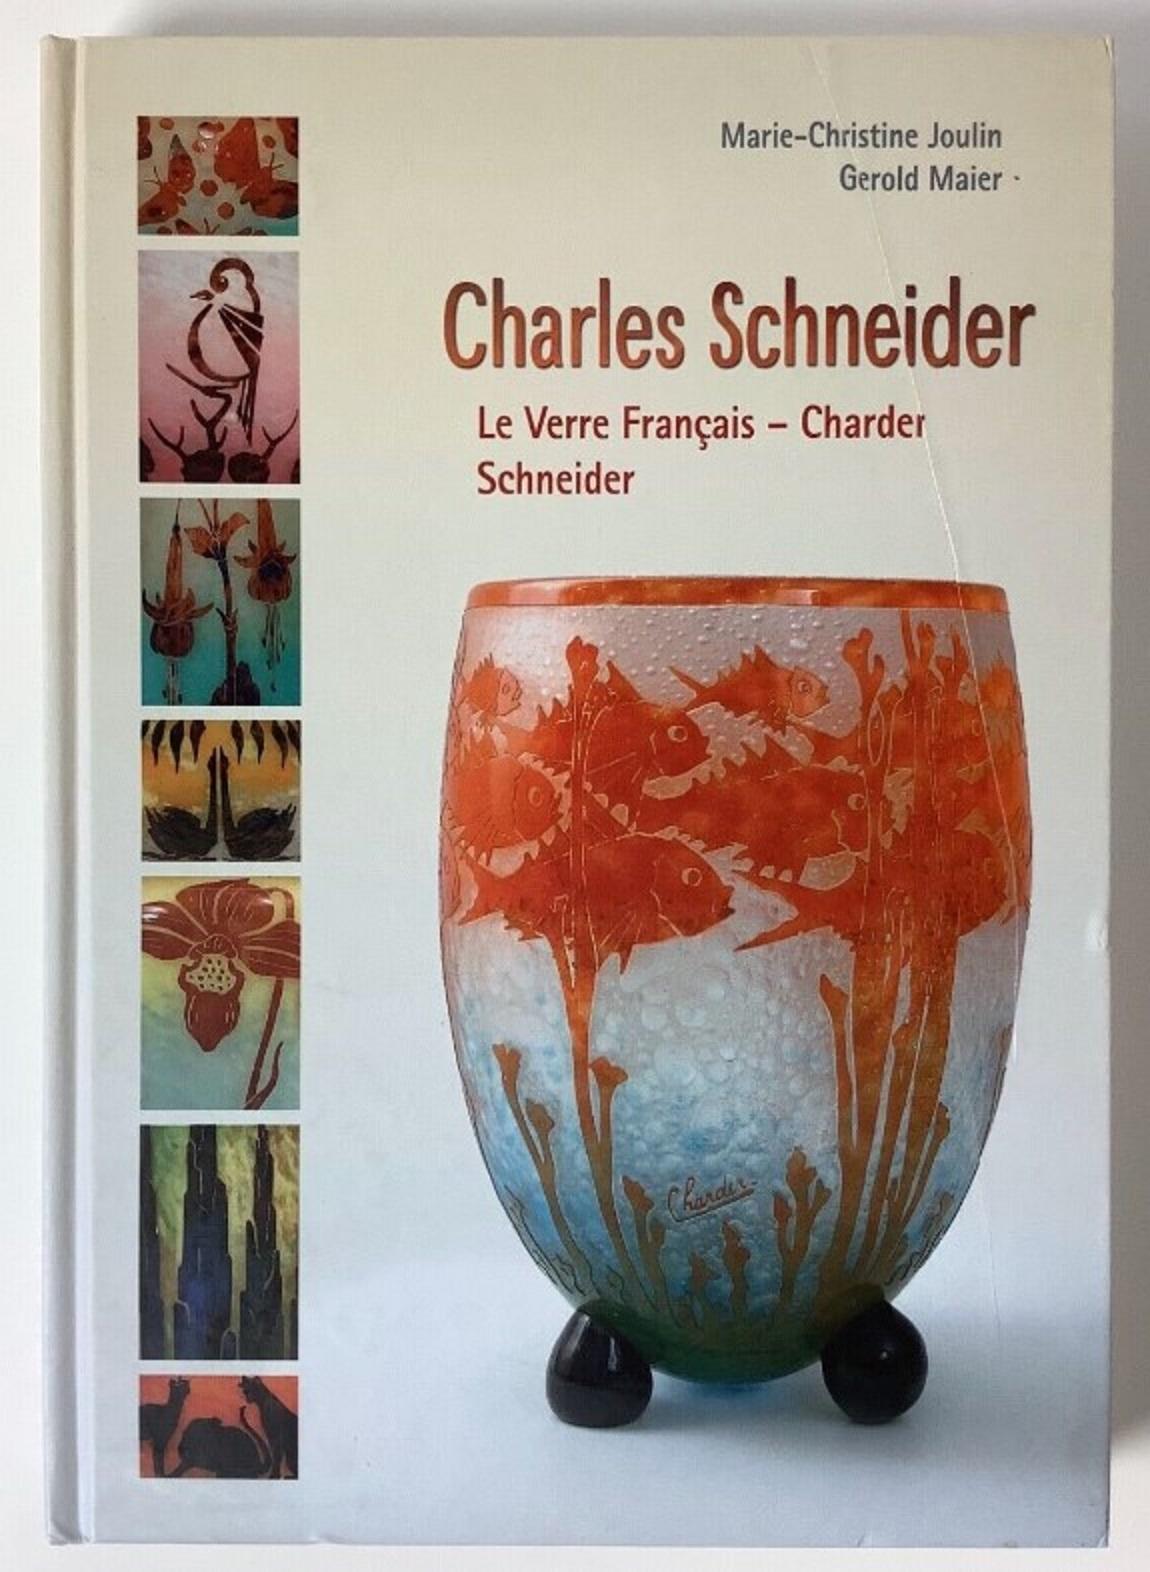 Signe du vase : Schneider 
Charles Schneider (1881-1953) a étudié l'art dans deux des plus prestigieuses écoles d'art françaises. D'abord à l'Ecole des Beaux-Arts de Nancy, puis à l'Ecole des Beaux-Arts de Paris. Pendant son séjour à Nancy, Charles